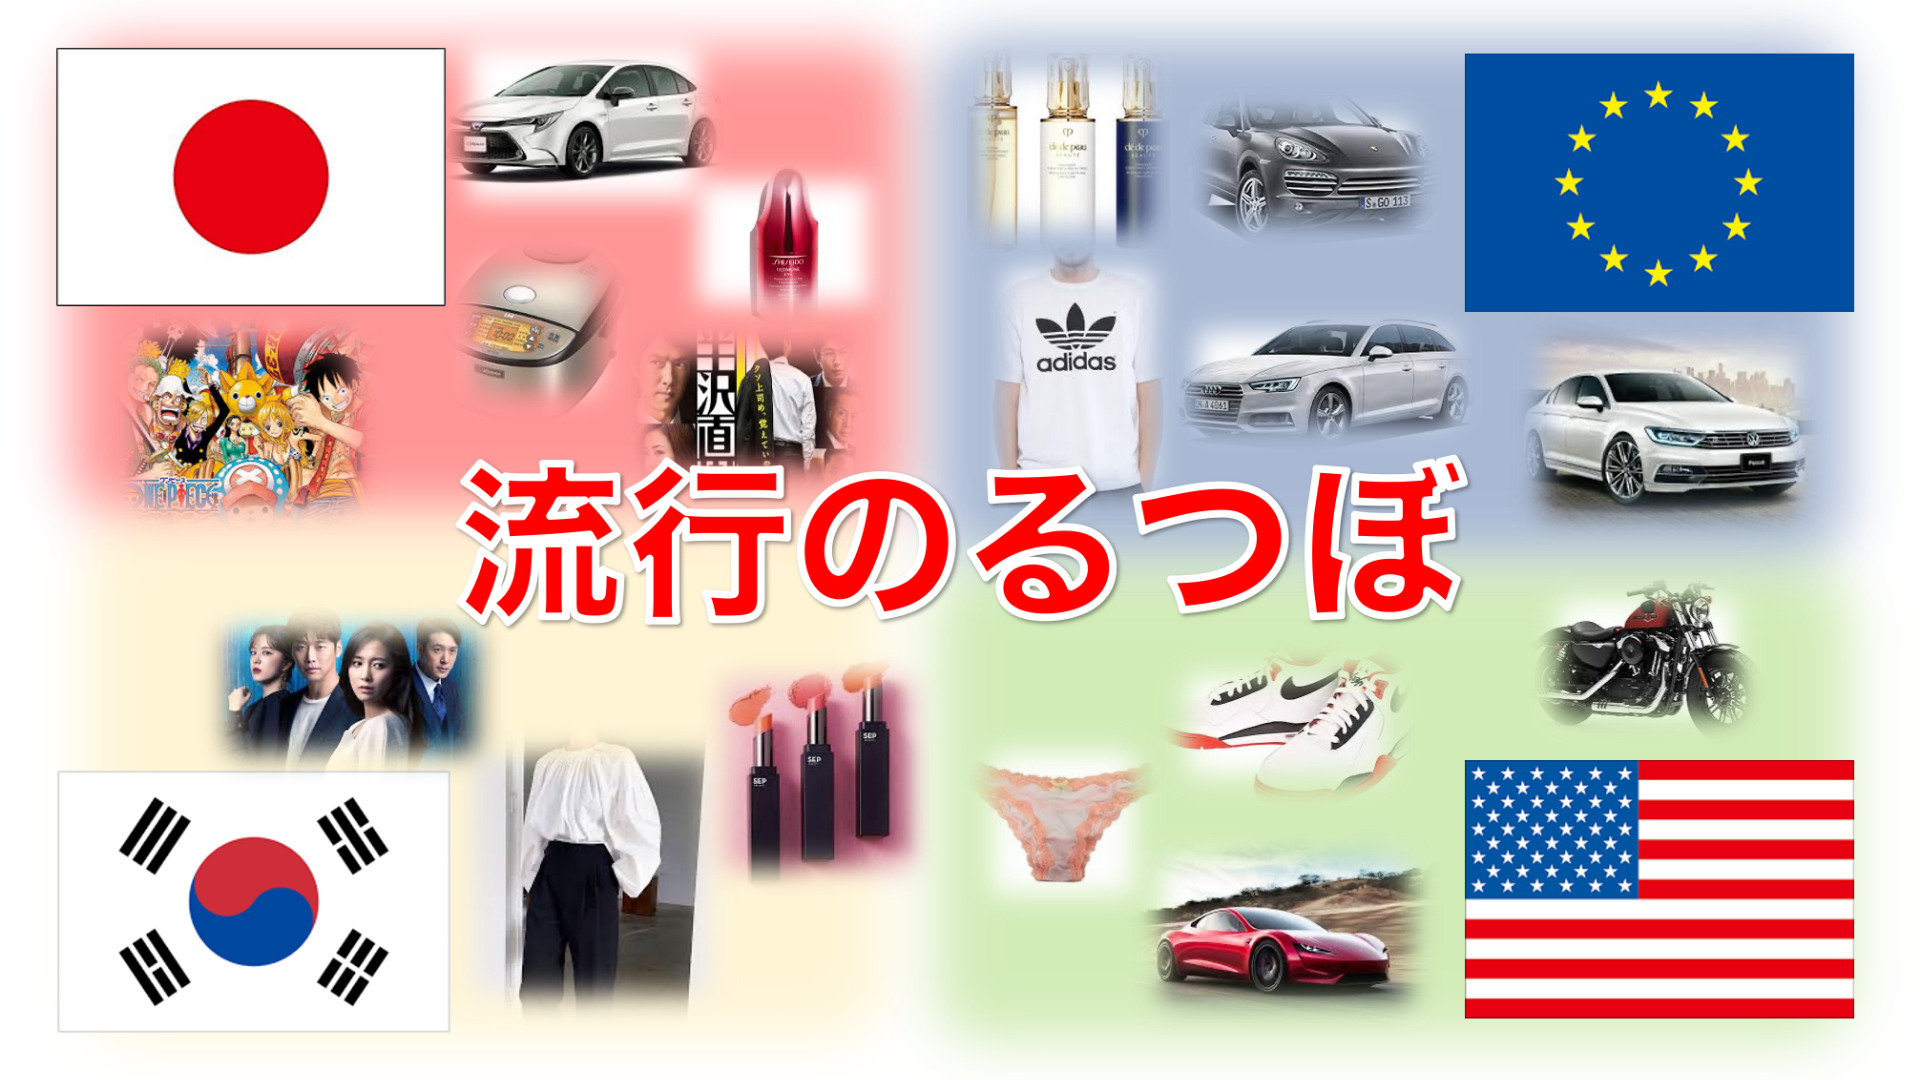 中国は日本人の想像以上に日本、韓国、欧州、アメリカなど様々な国のブランドが混じり合っている。